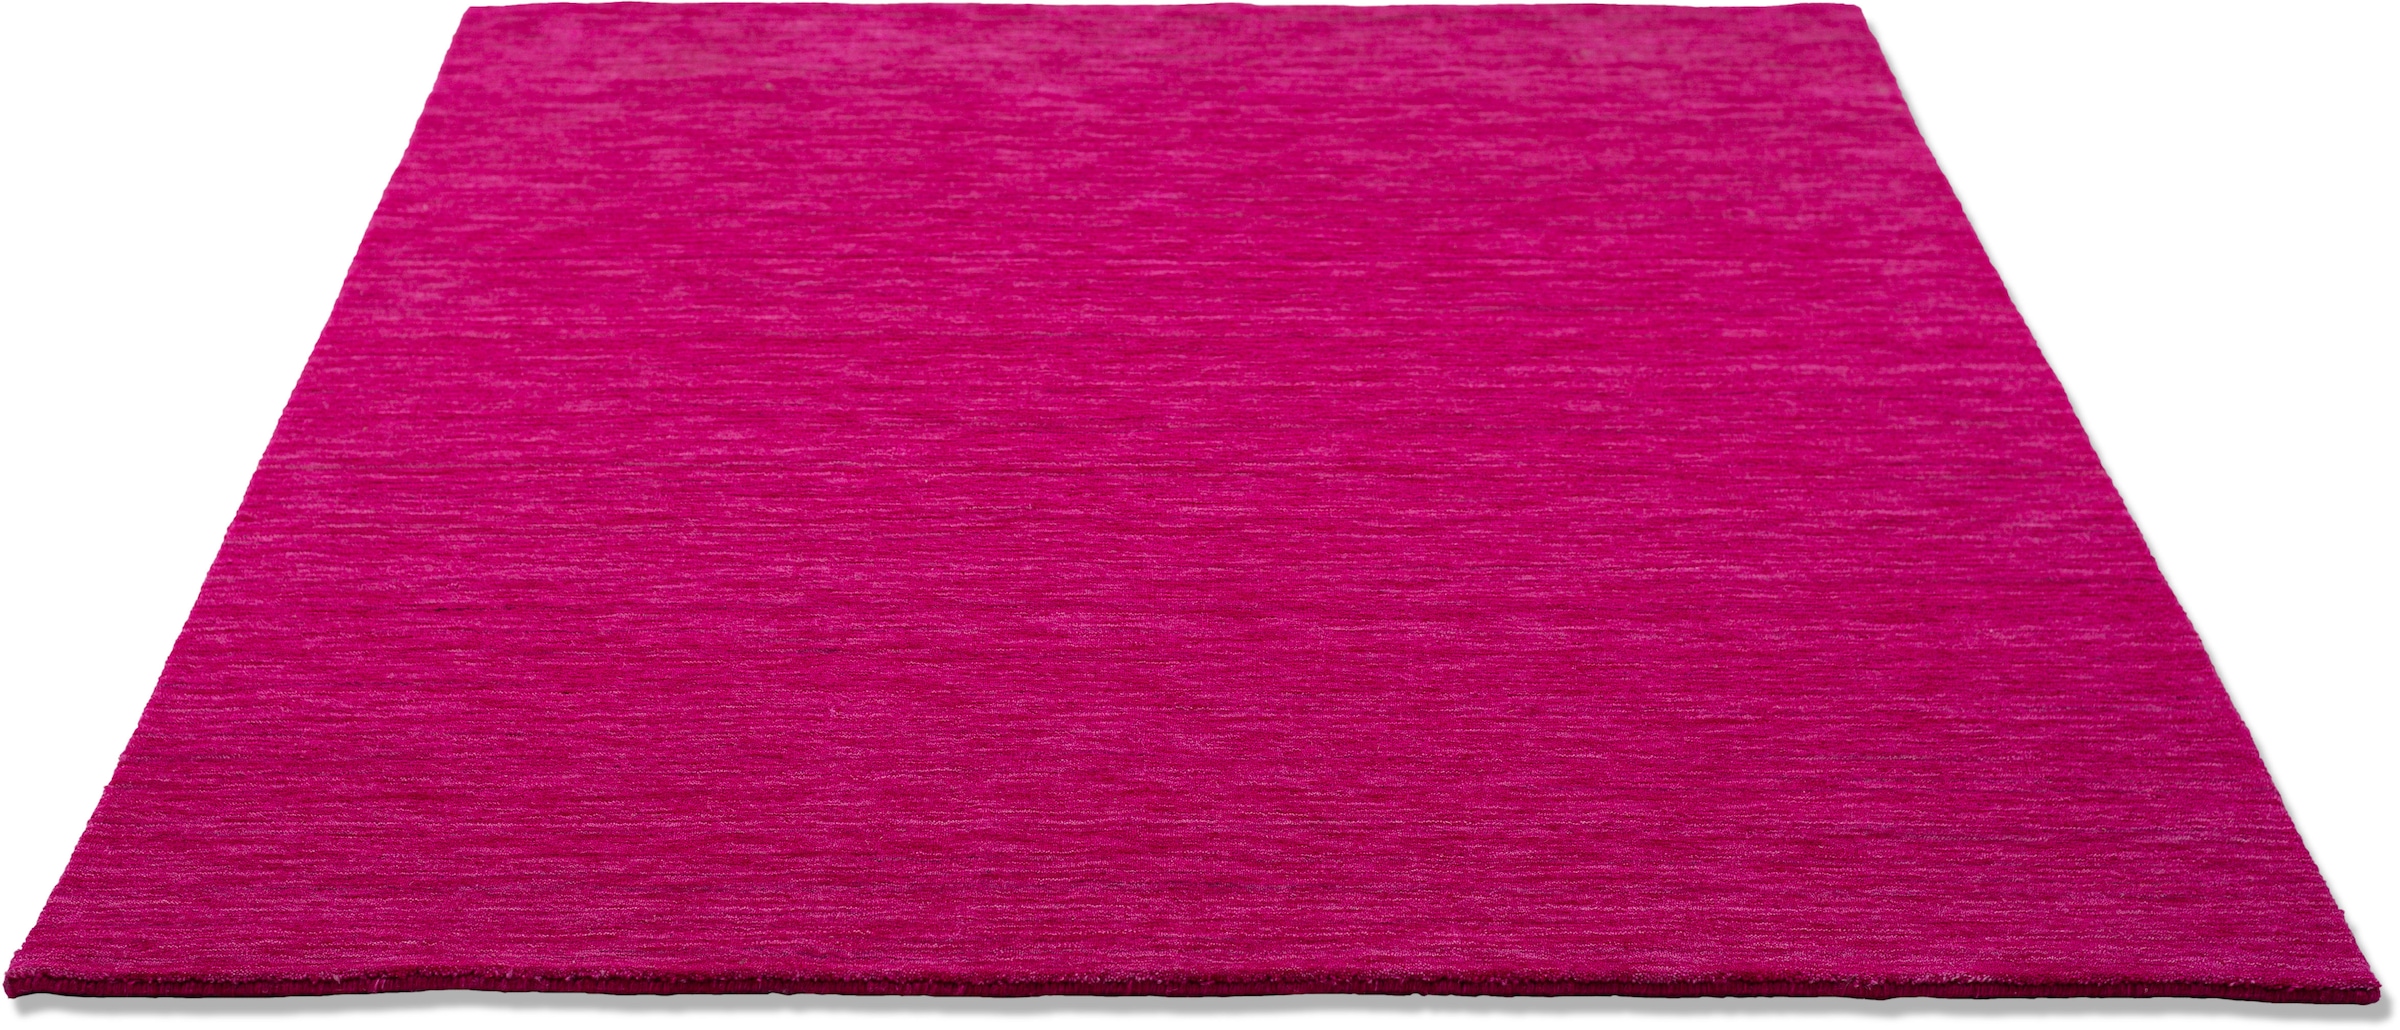 THEKO Wollteppich »Holi«, rechteckig, Uni-Farben, leicht meliert, reine Wolle, handgewebt mit Knüpfoptik